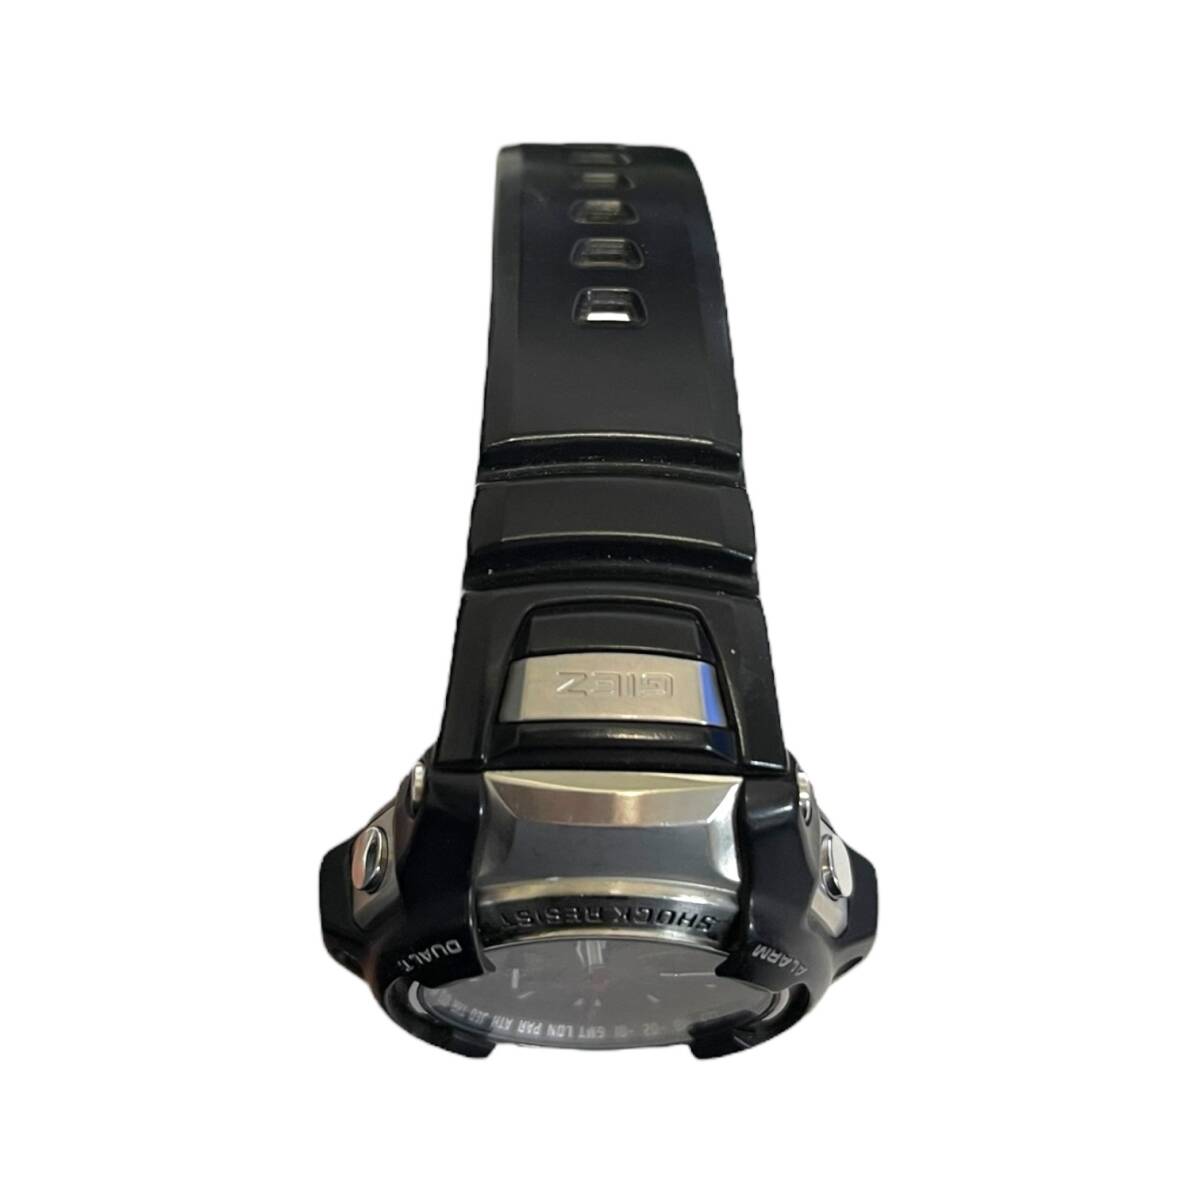 【中古品】CASIO G-SHOCK カシオ GS-1000J 電波時計 ソーラー ブラック デイト メンズ腕時計 本体のみ hiL6197RO_画像10